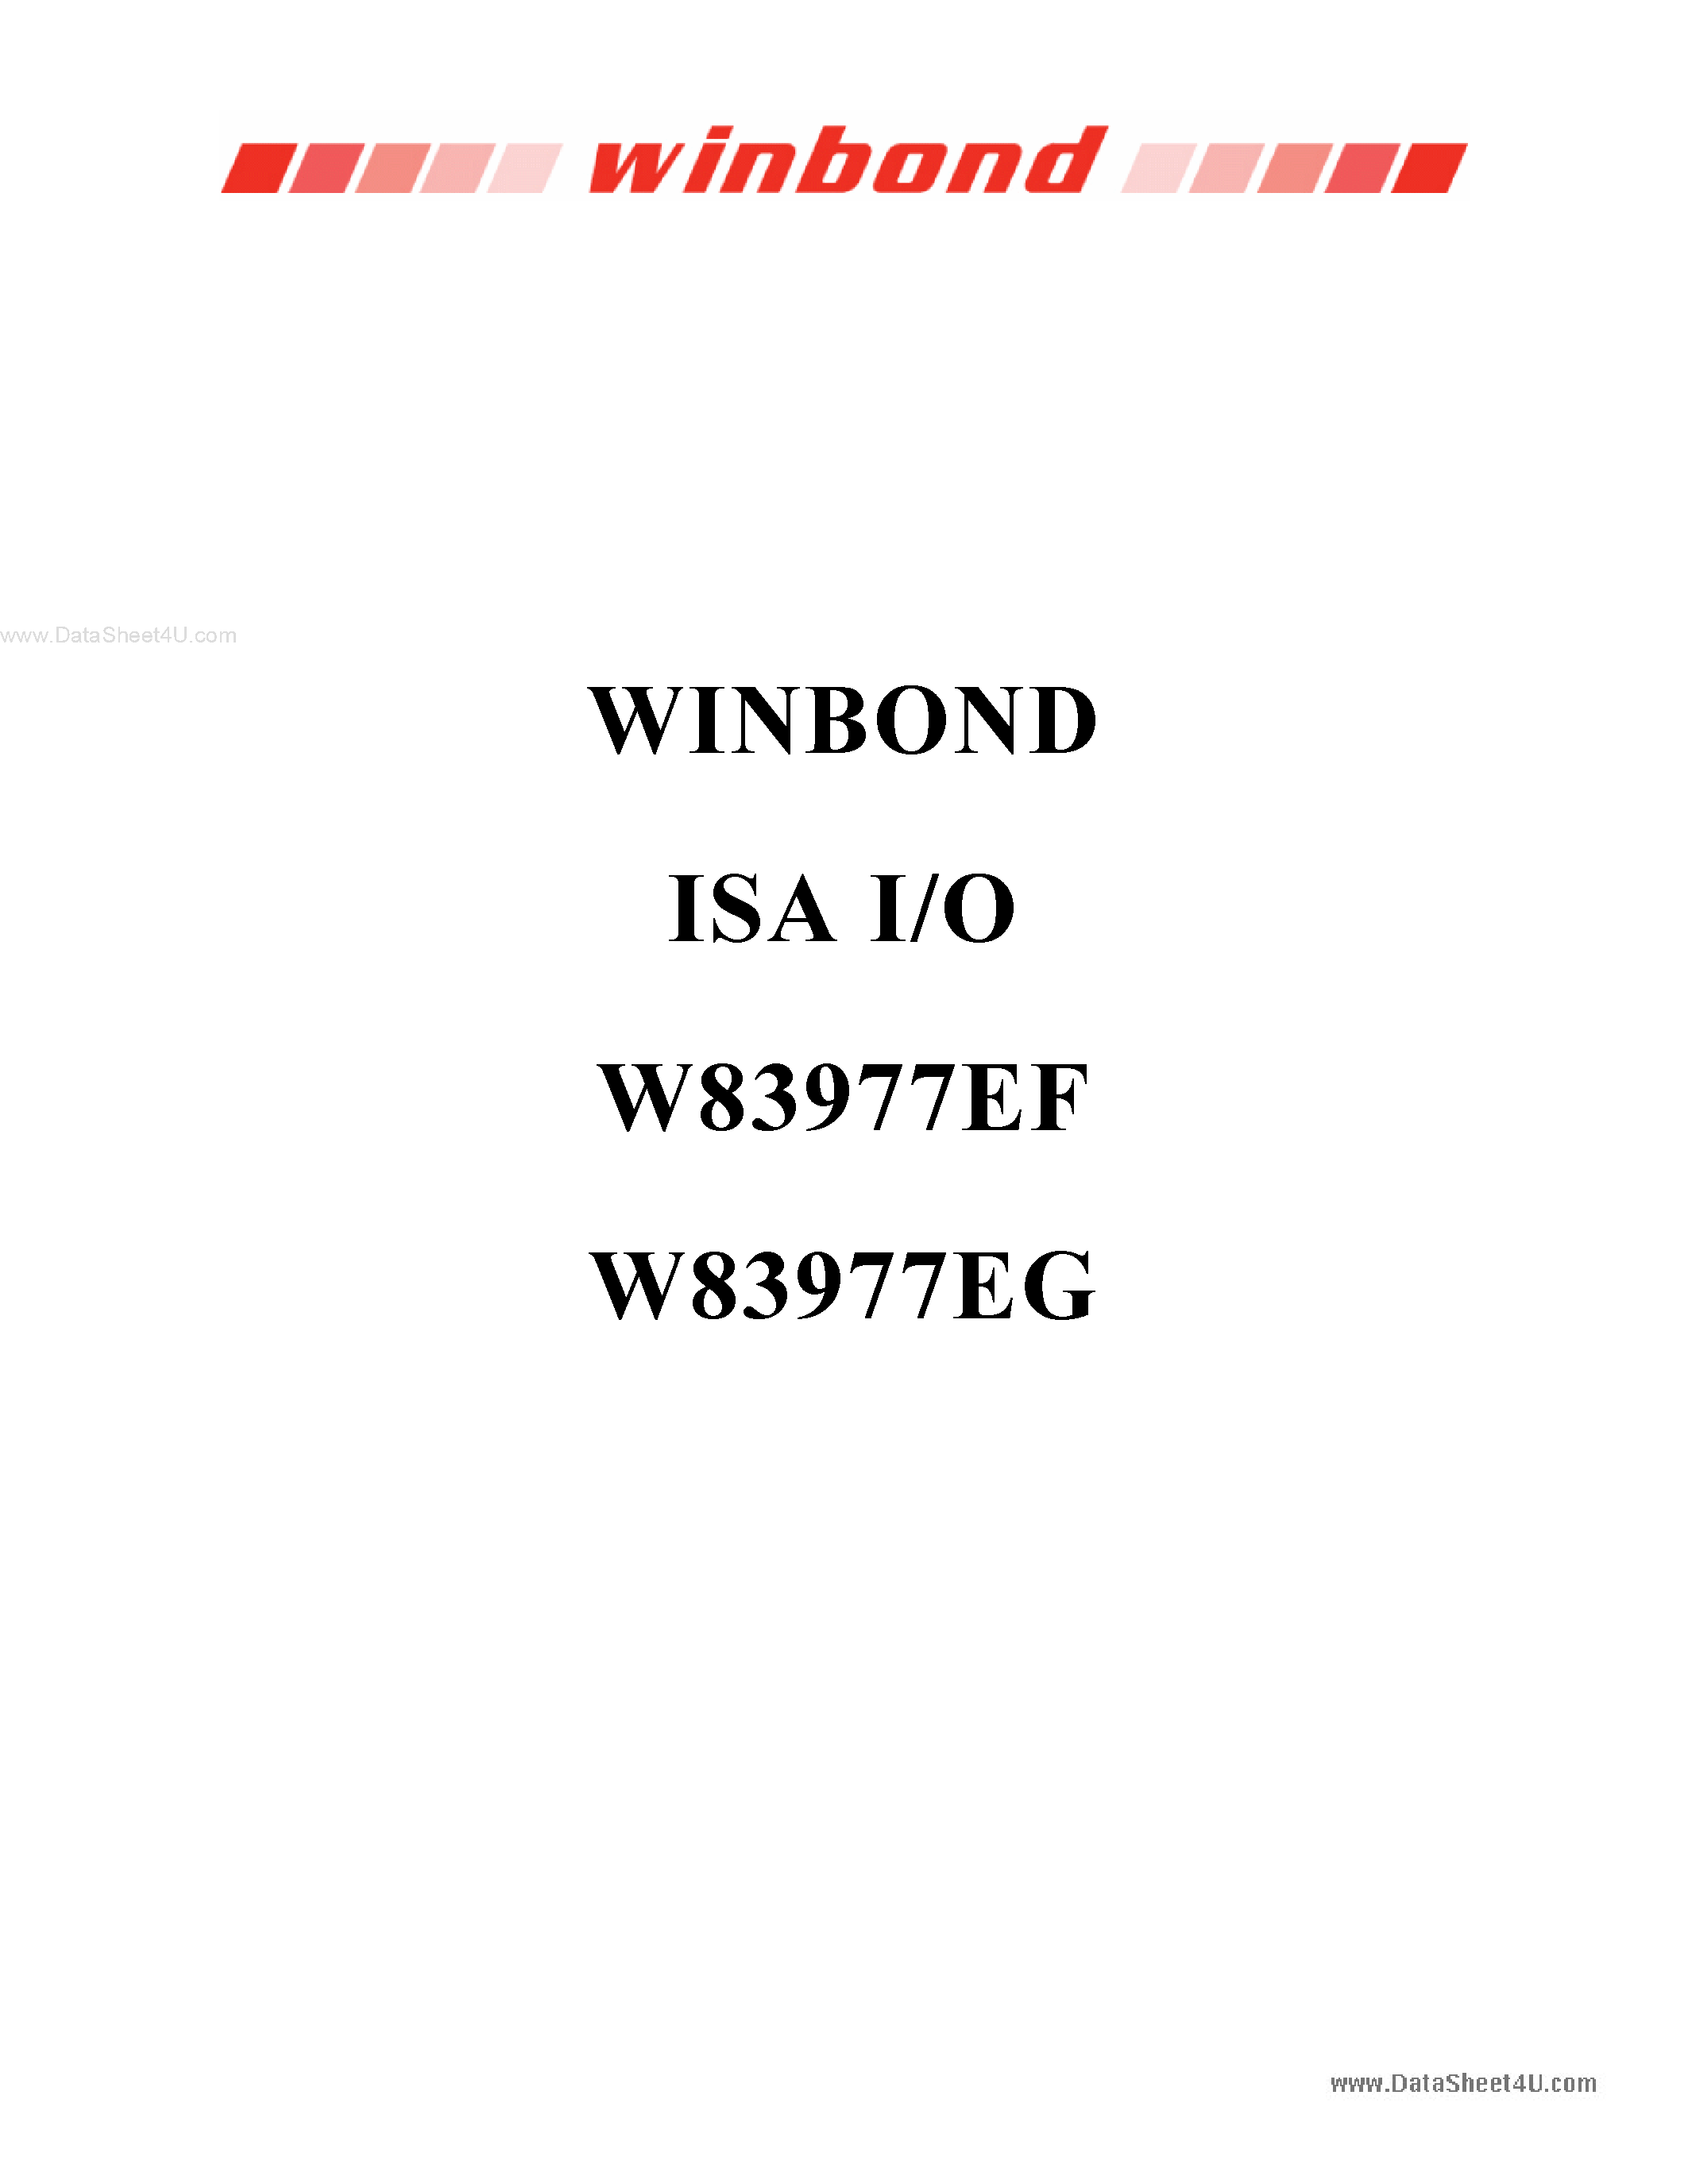 Datasheet W83977EG - WINBOND ISA I/O page 1